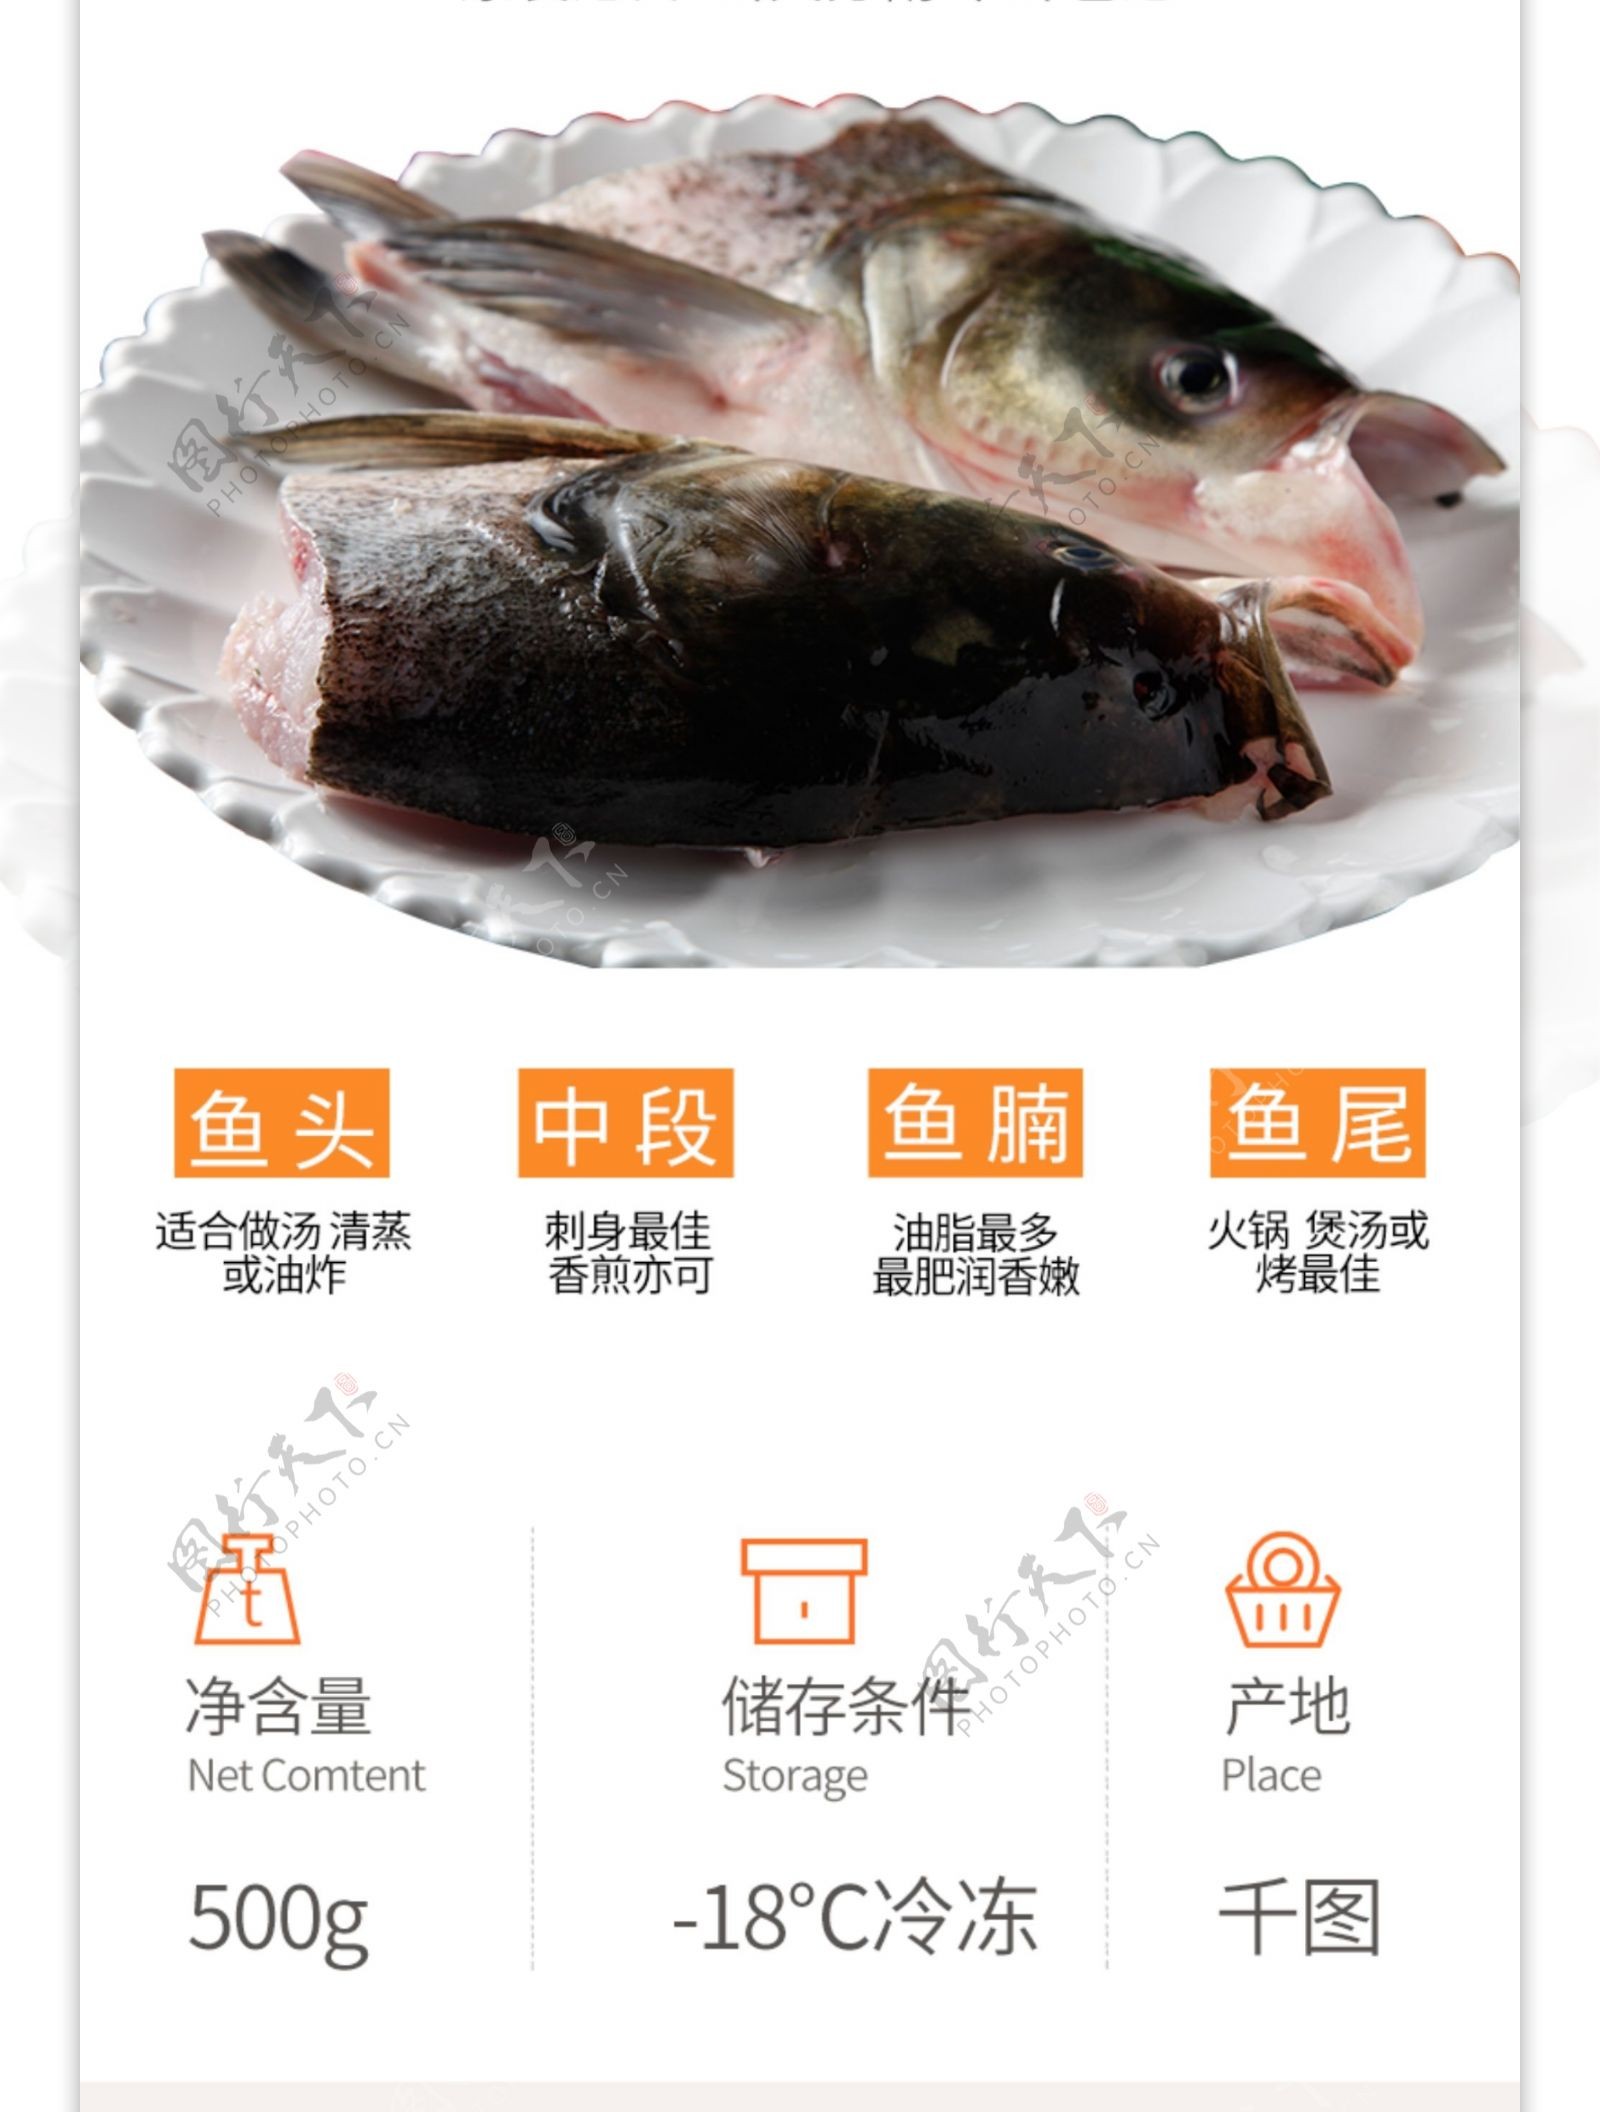 淘宝天猫生鲜海鲜三文鱼详情页